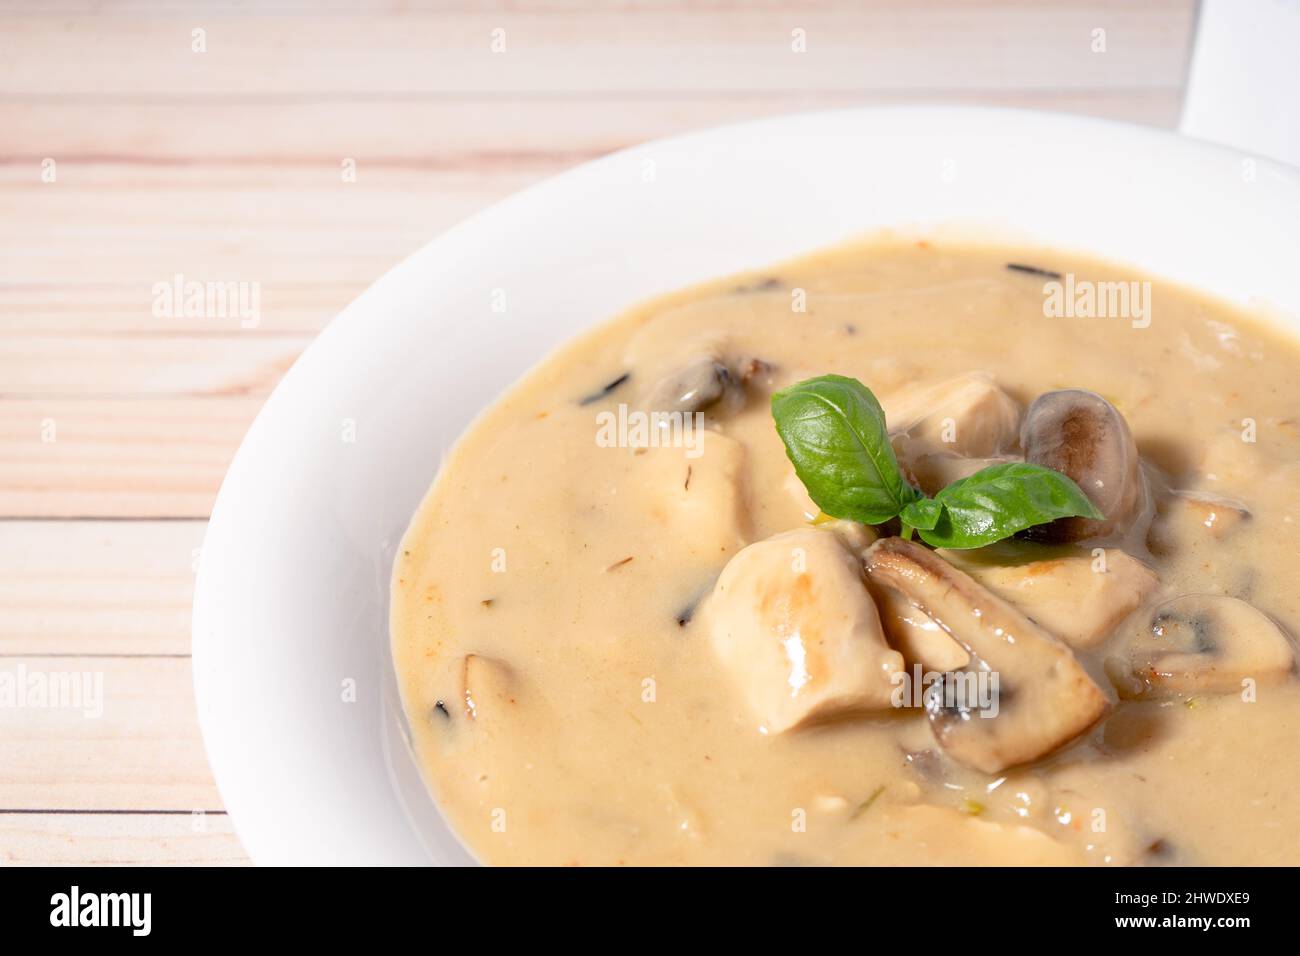 Une soupe de poulet et de champignons maison ou un fricassée de poulet à la française, dans un bol à soupe blanche sur une table en bois. Vue en hauteur. Gros plan Banque D'Images